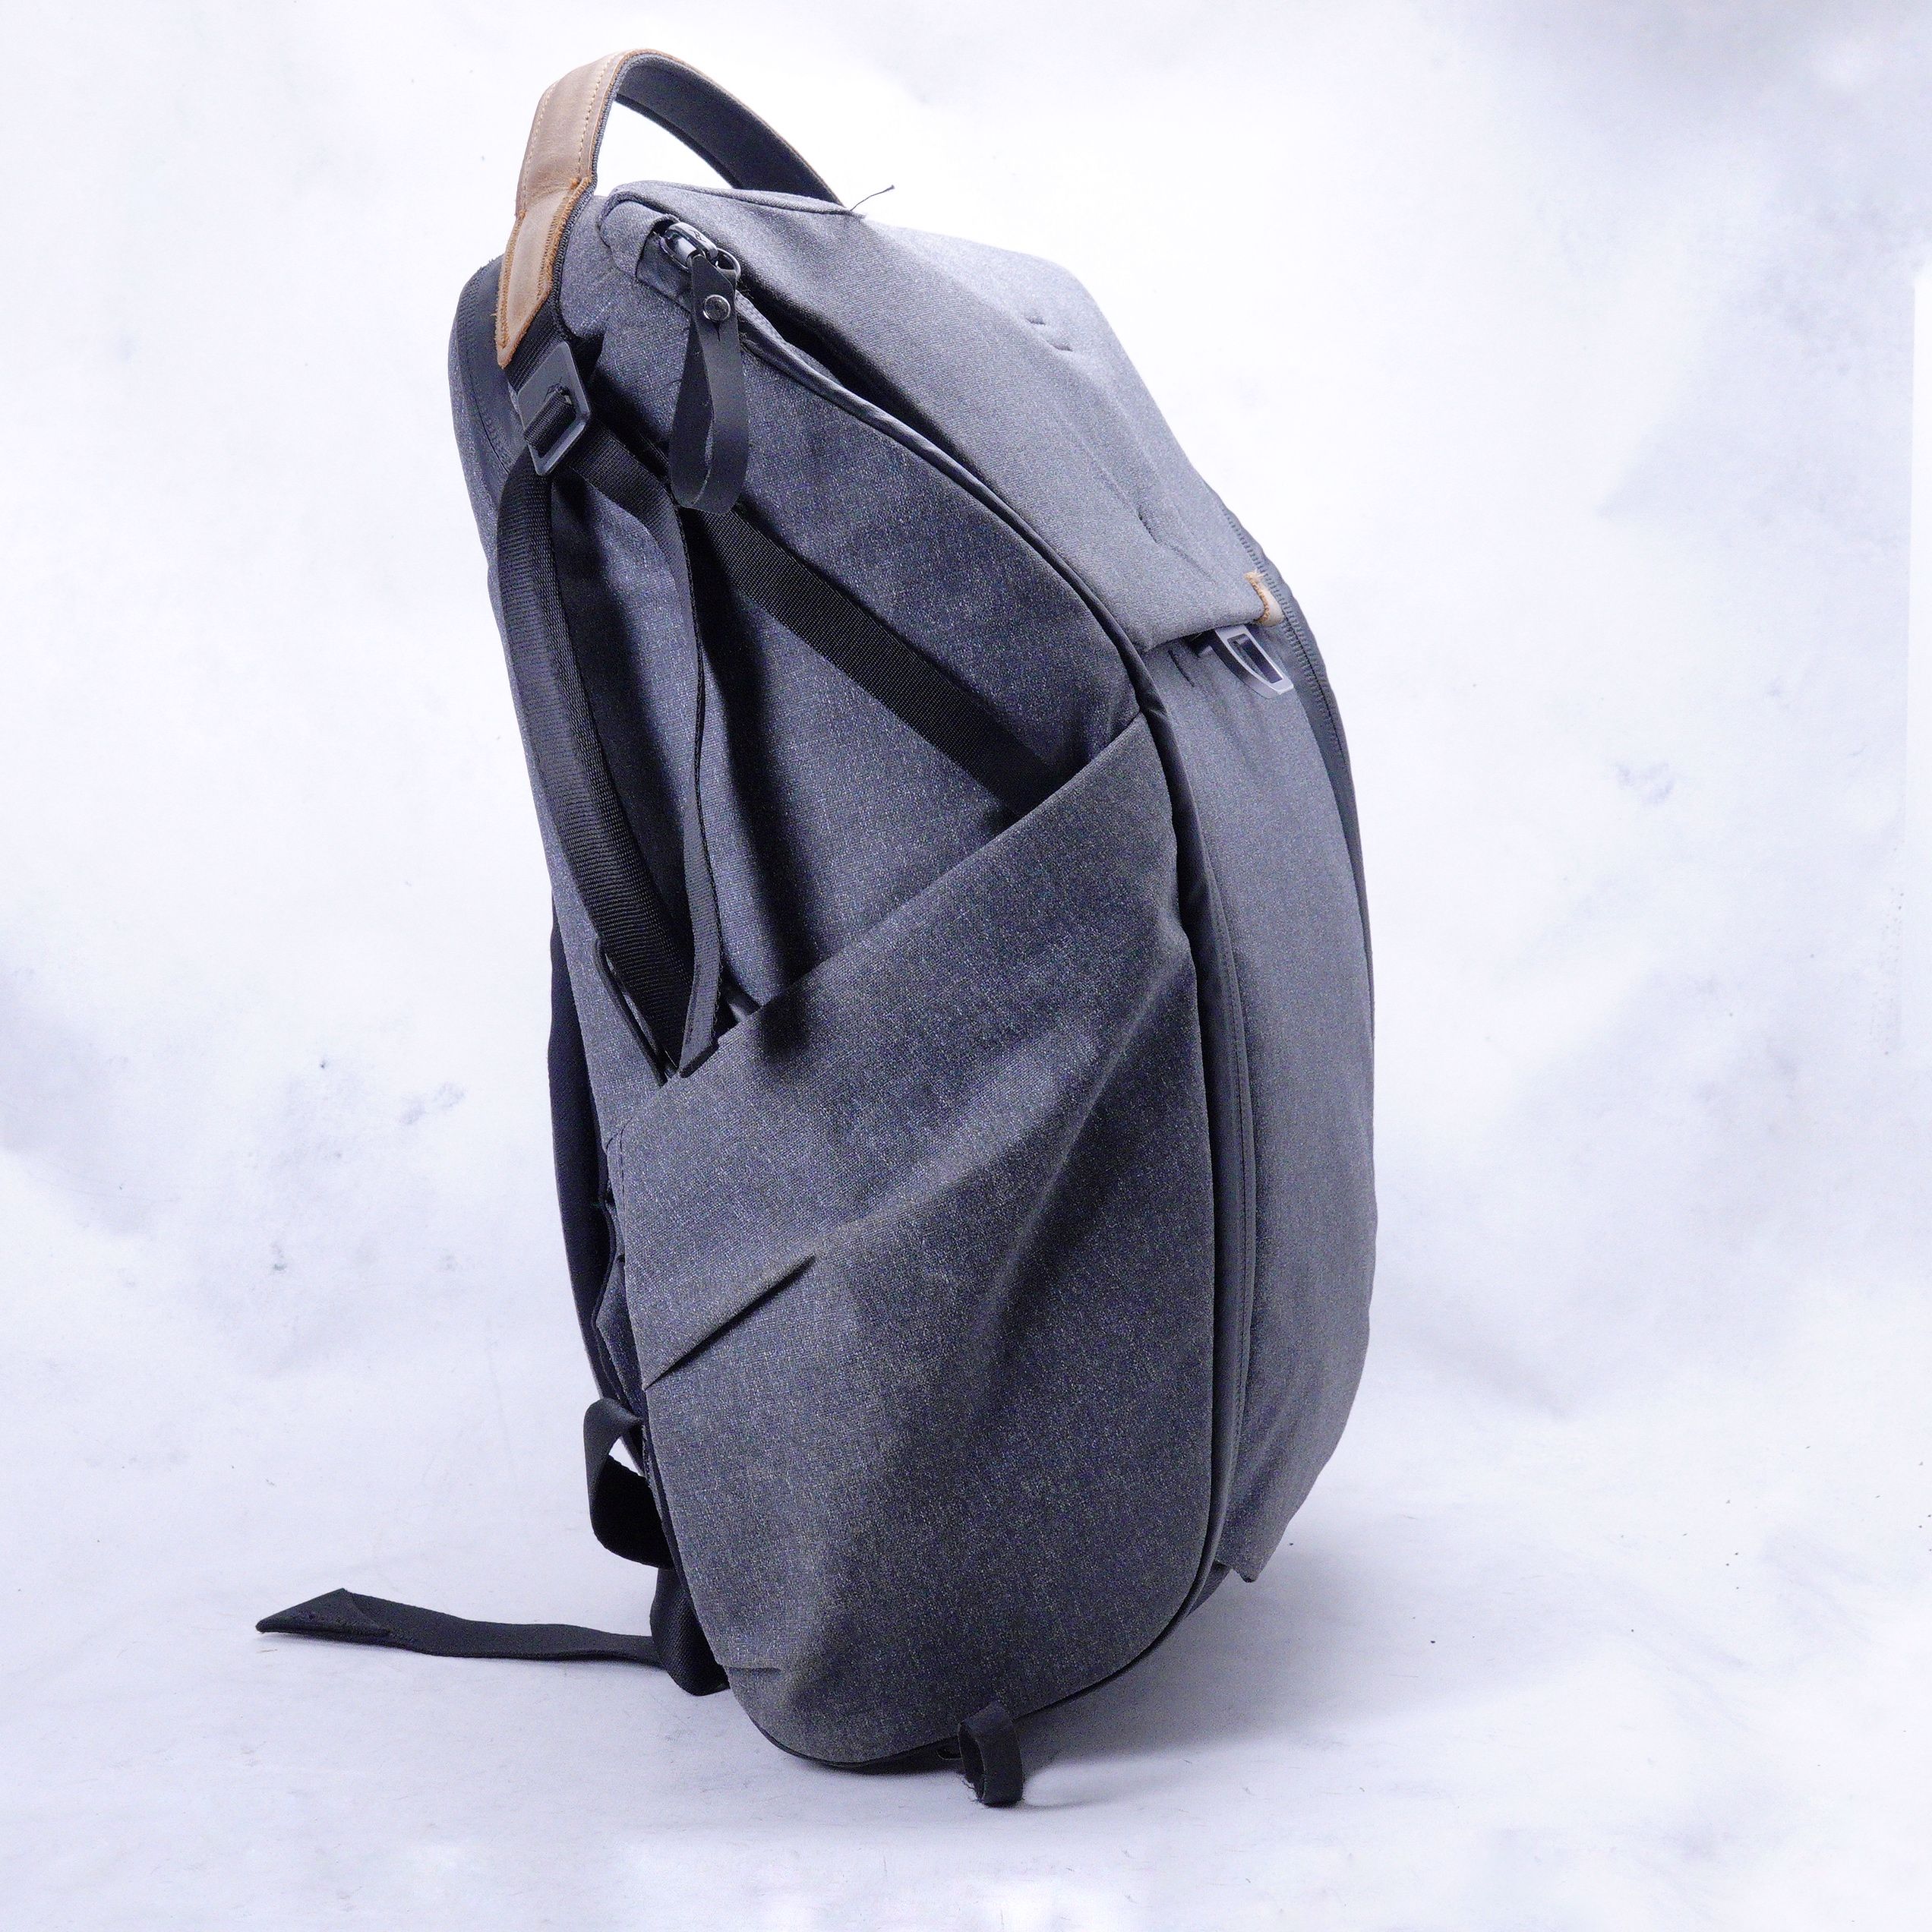 Mochila Peak Design Everyday Backpack v2 (20L Charcoal) - Usado